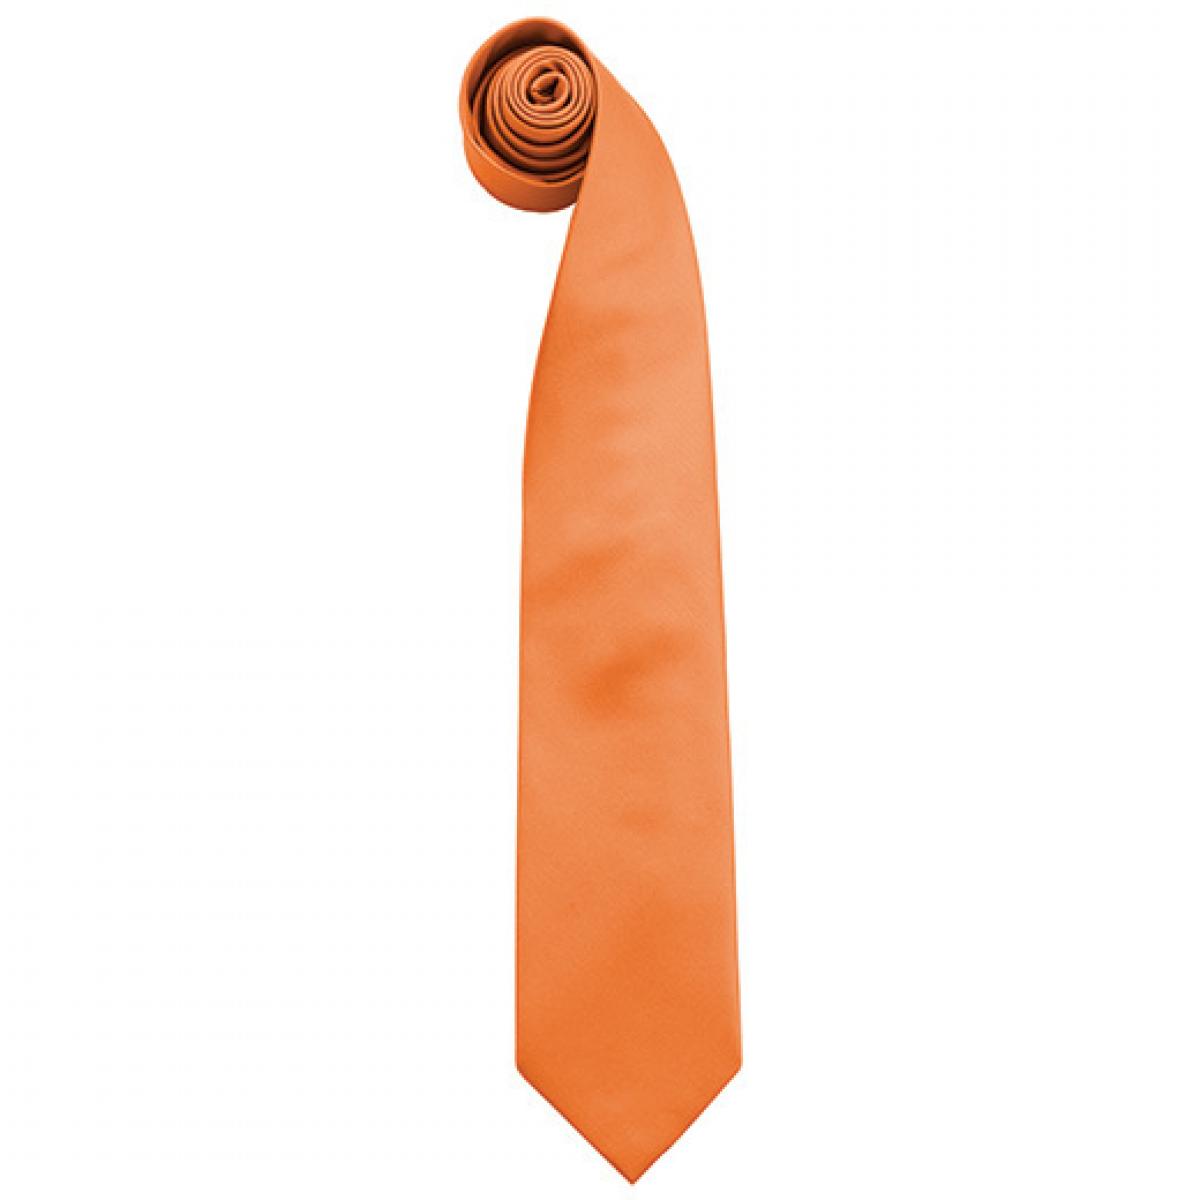 Hersteller: Premier Workwear Herstellernummer: PR765 Artikelbezeichnung: Krawatte Uni-Fashion / Colours Farbe: Orange (ca. Pantone 1495C)